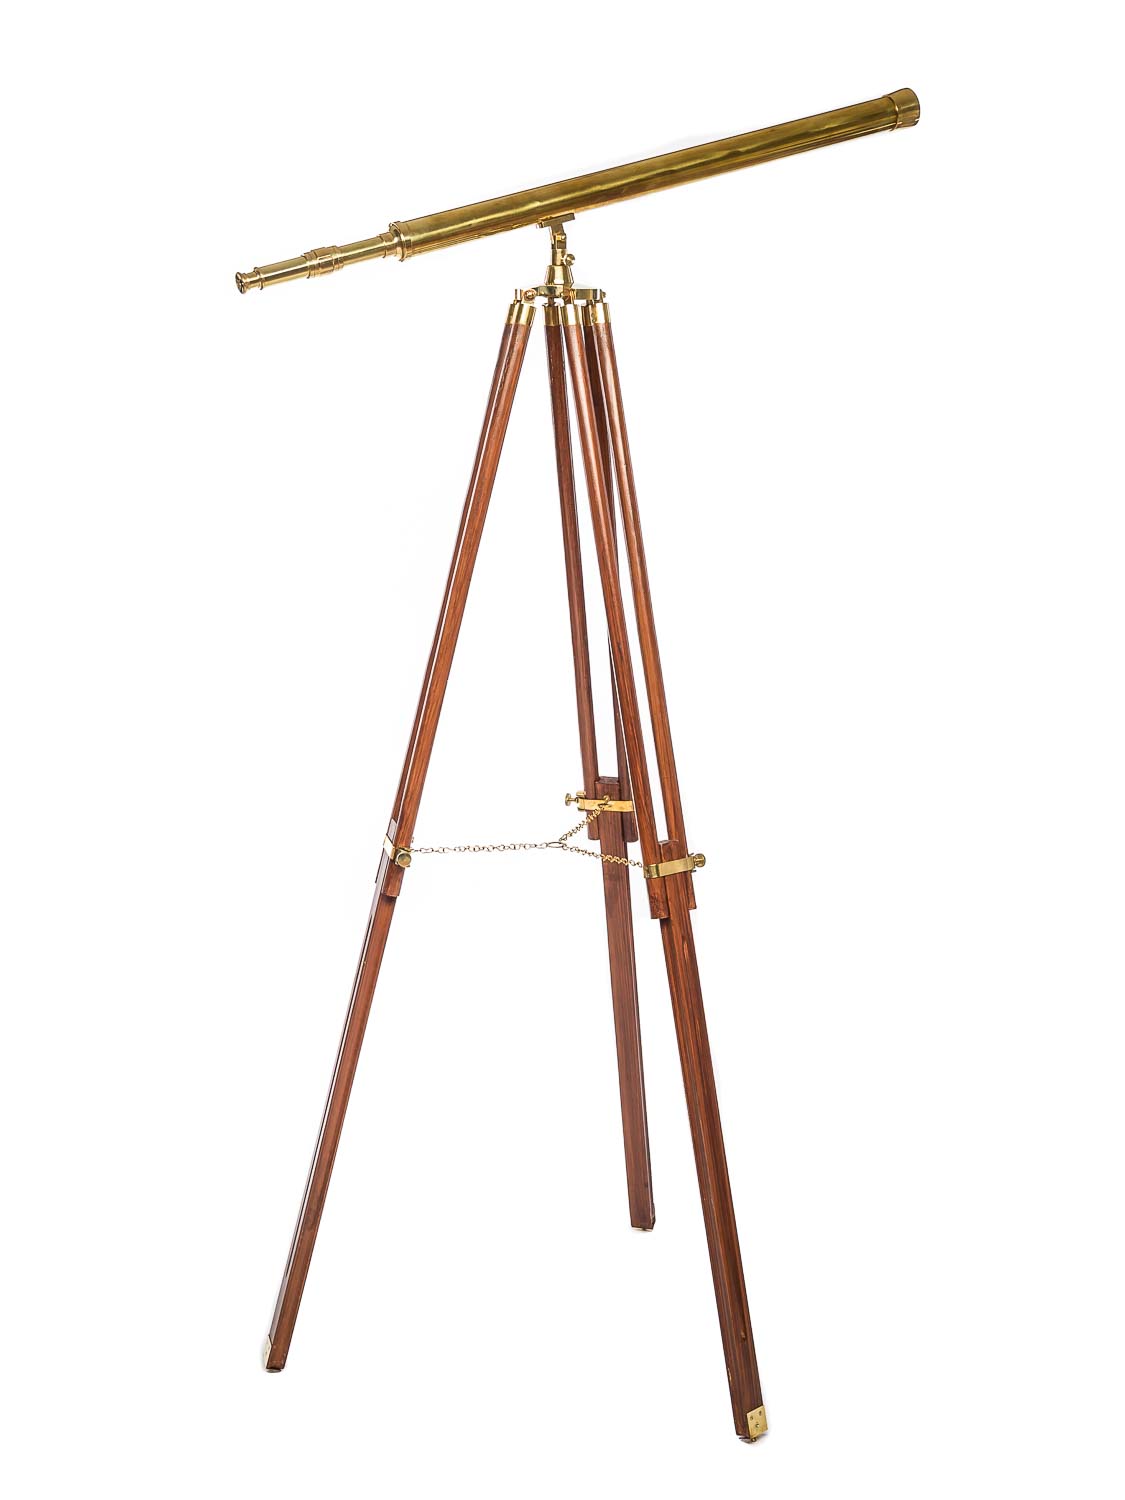 Grande telescopio cannocchiale binocolo in ottone brunito treppiede in legno 150cm stile antico 